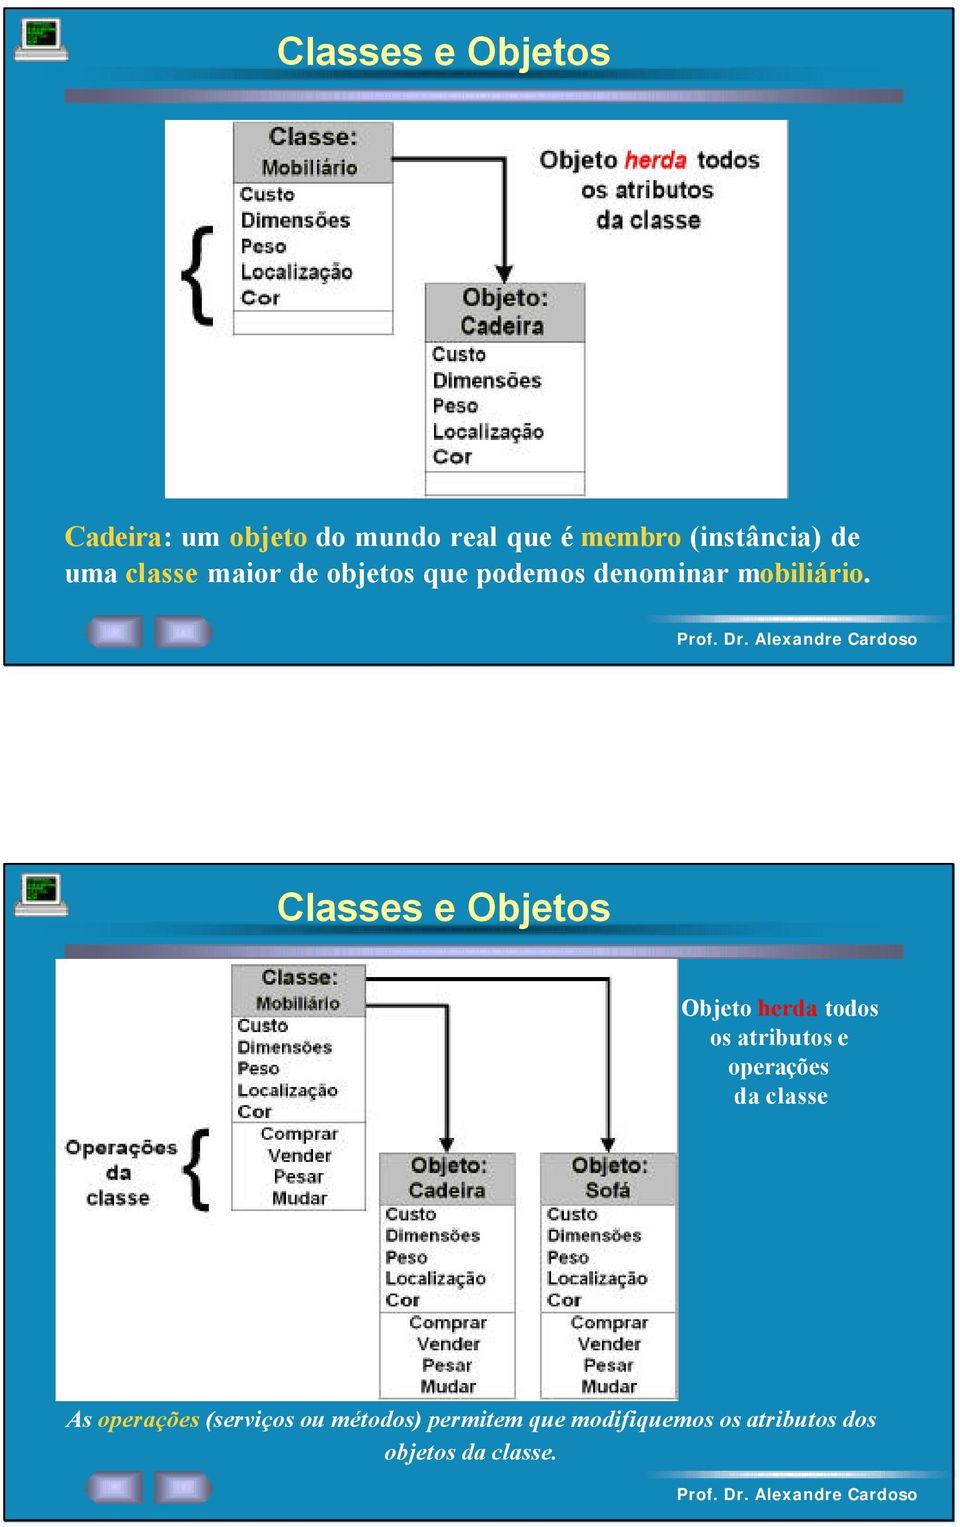 Classes e Objetos Objeto herda todos os atributos e operações da classe As